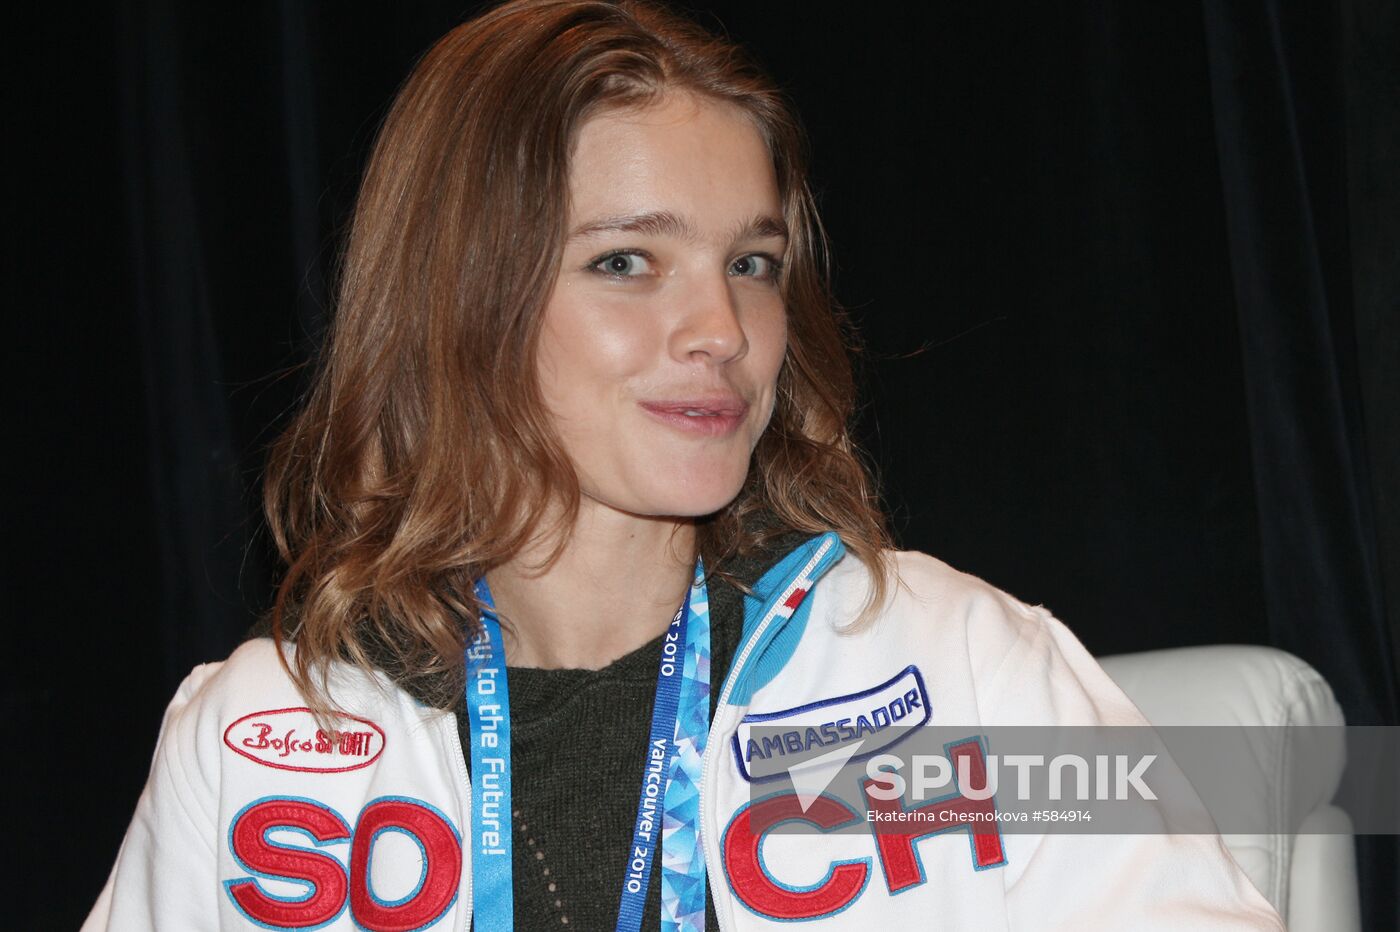 Natalya Vodyanova